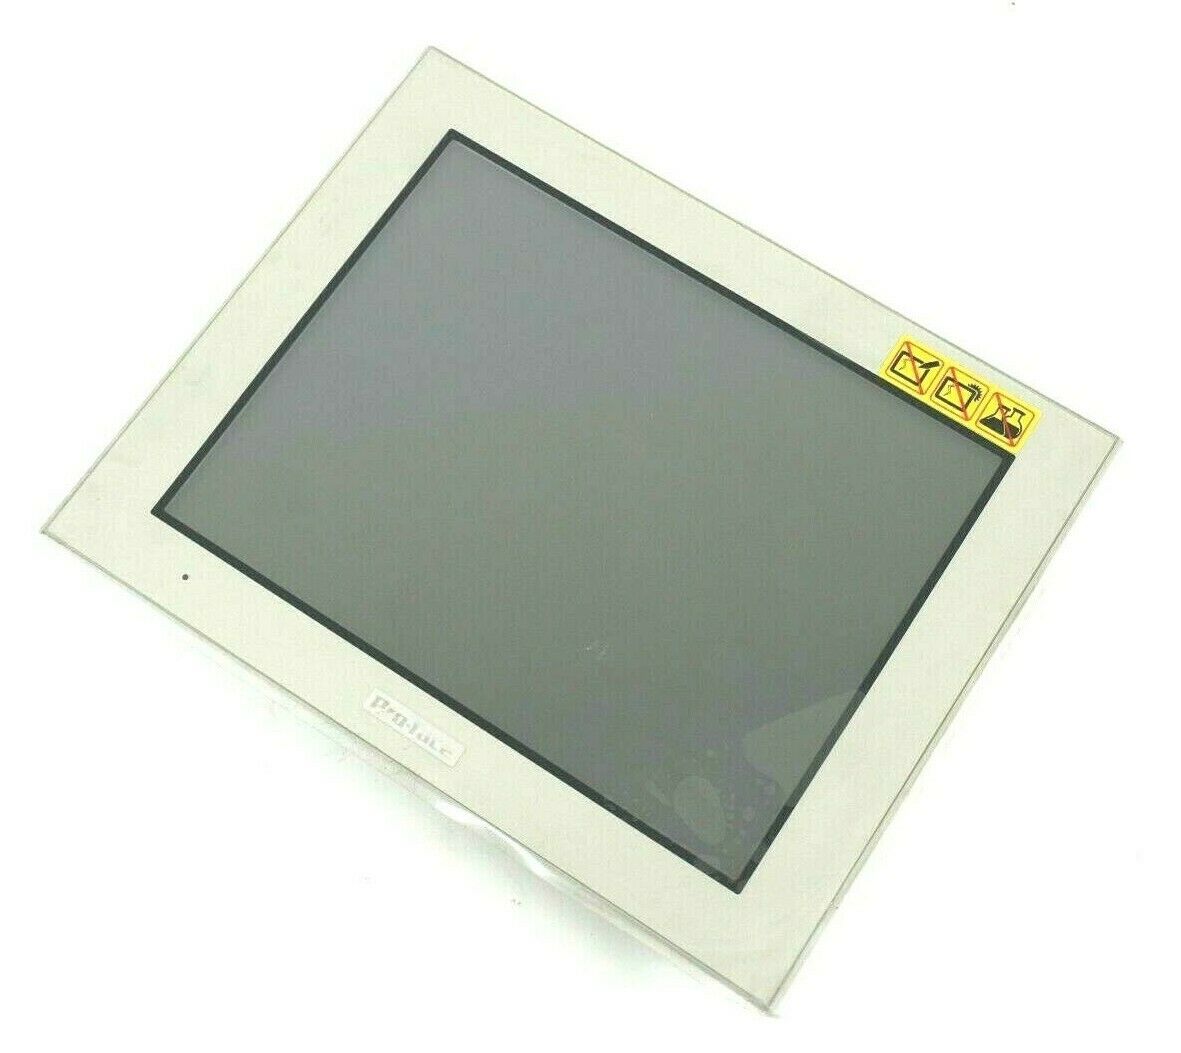 値引き Pro-face タッチパネル GP-4501T Analog Touch Panel 建築材料、住宅設備  ENTEIDRICOCAMPANO